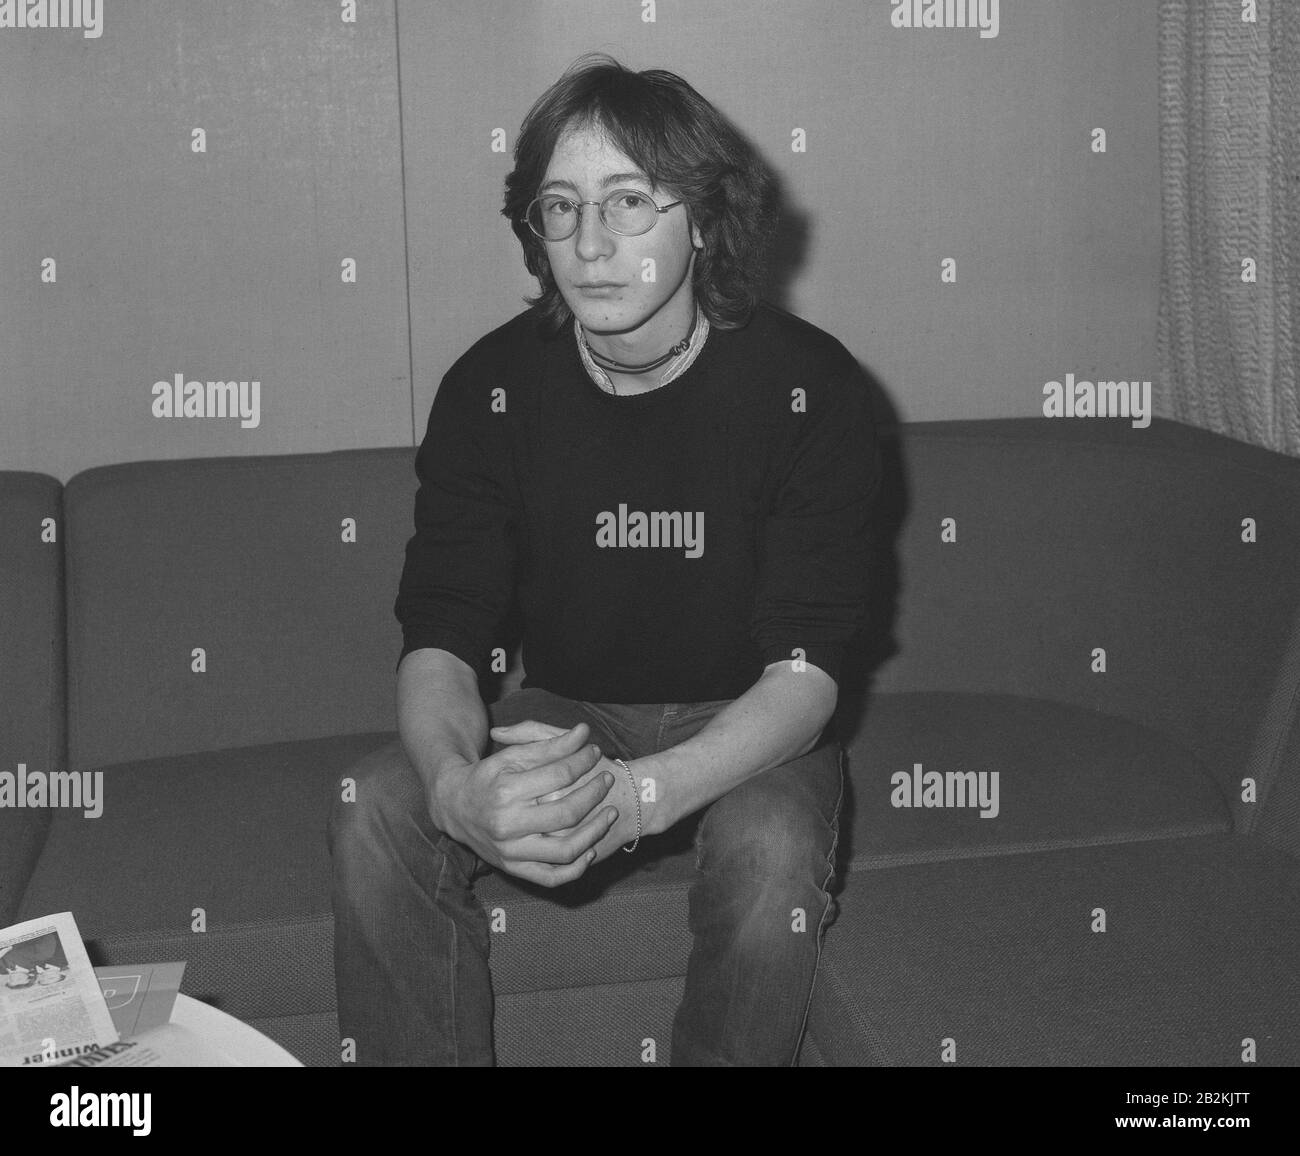 Julian Lennon, fils de 17 ans de l'ex-Beatle John Lennon, à l'aéroport Heathrow de Londres, lorsqu'il est parti pour New York où son père pop superstar a été abattu hier soir par un homme à son arrivée dans son appartement à New York. Banque D'Images